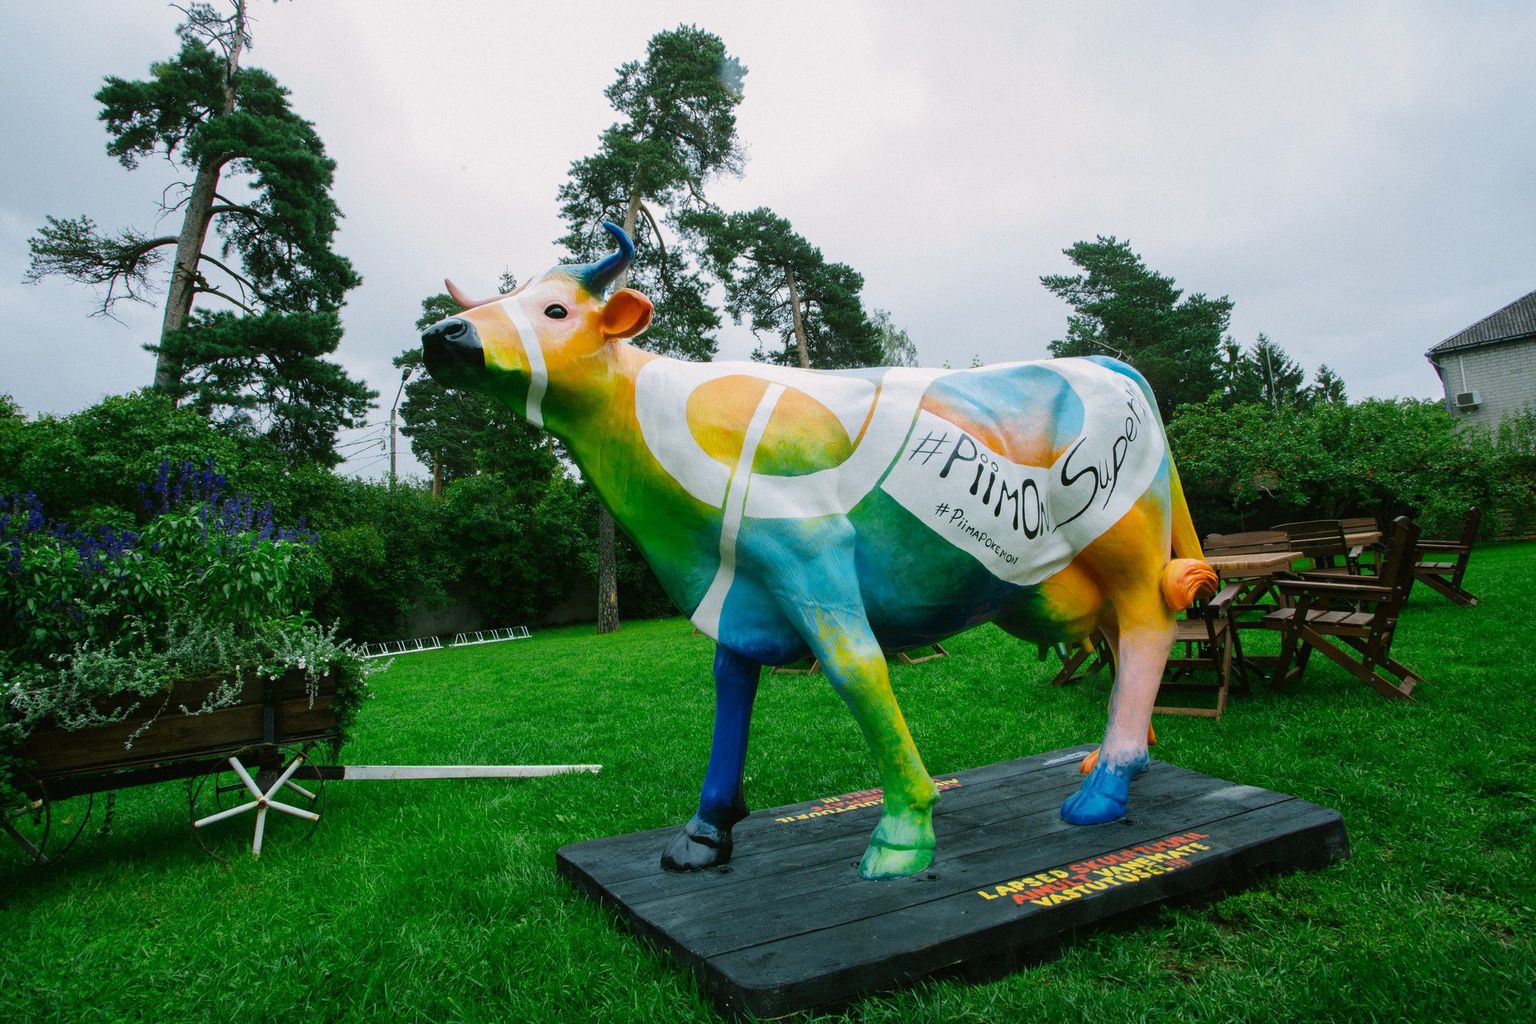 Toiduliidu tänavuse piimakampaania maskotina mööda Eesti linnu rändav värvikirev piimalehma skulptuur jõuab sel nädalavahetusel Rakverre.